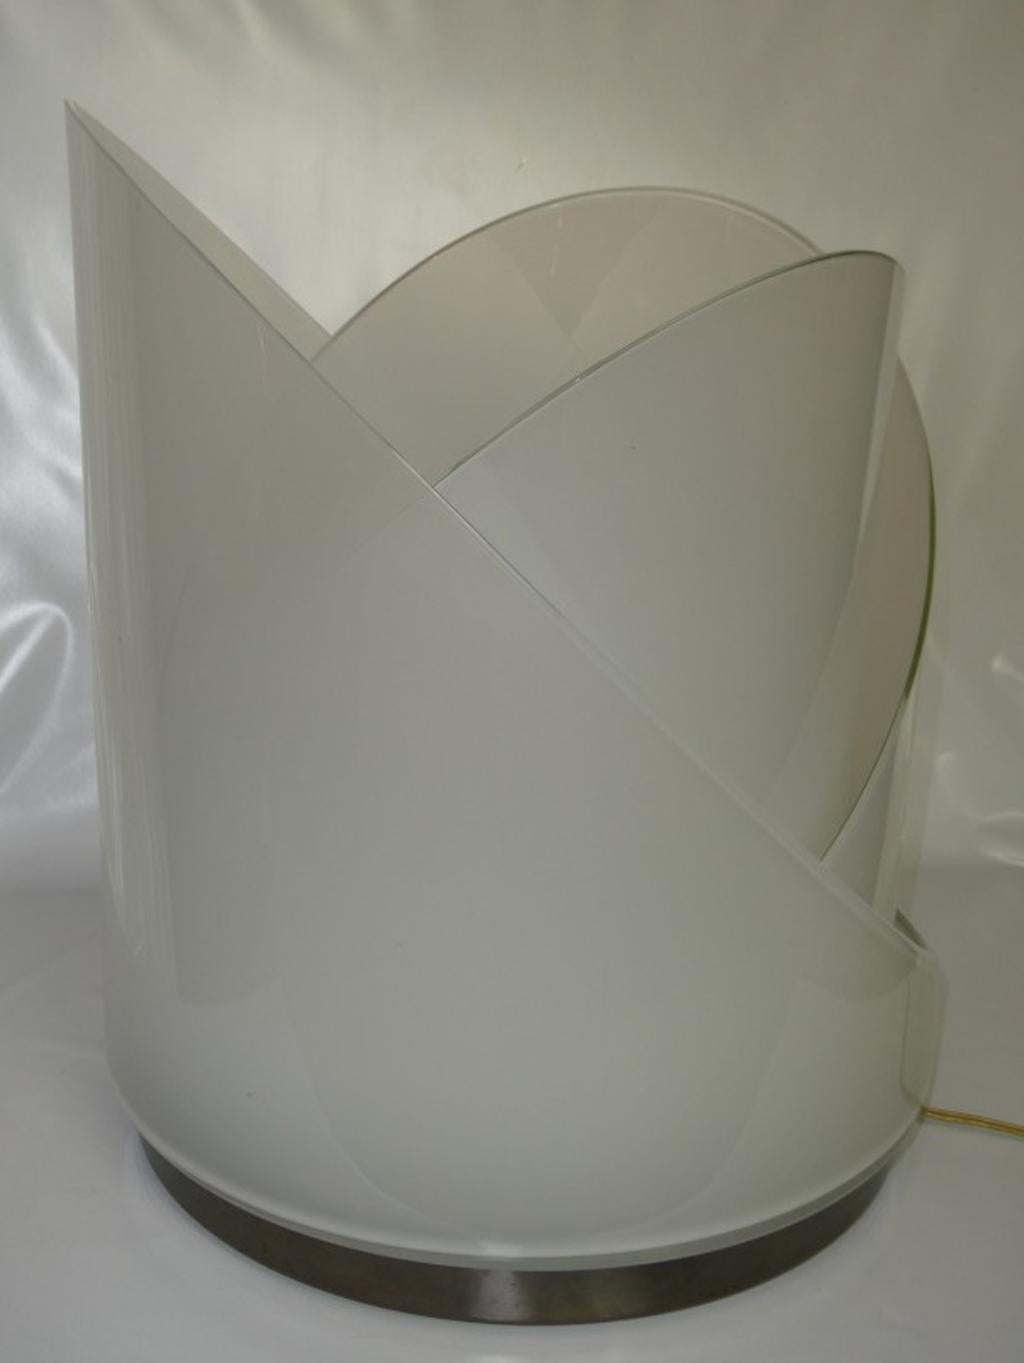 Grande lampe vintage en verre soufflé Modèle LT300 par Carlo Nason pour Mazzega. Parfois appelée lampe lotus, cette lampe est composée de 3 pièces ou feuilles en verre opaque qui tournent autour du globe central et peuvent être positionnées à